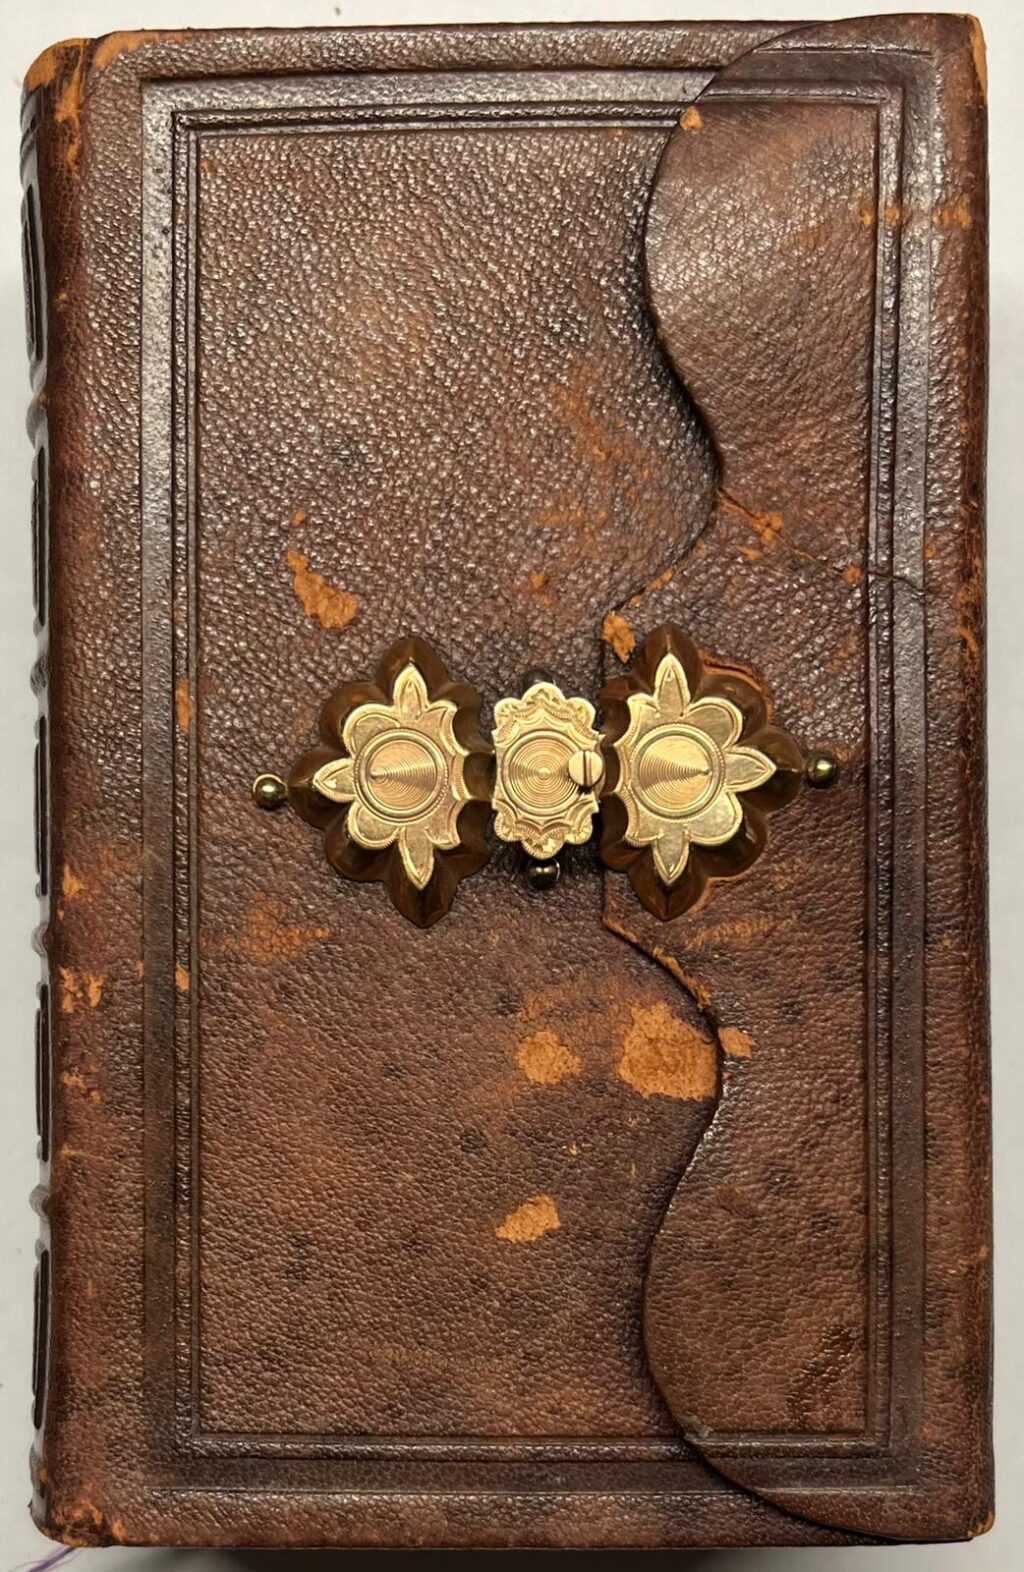 [Bible, 1884, Wallet Binding] Het Nieuwe Testament (...), Amsterdam/Haarlem: J. Brandt en zoon and J. Enschedé en zonen, 1884, (3), 355, (6), 420, (8), 366, (14), 142, (8), 32 pp.